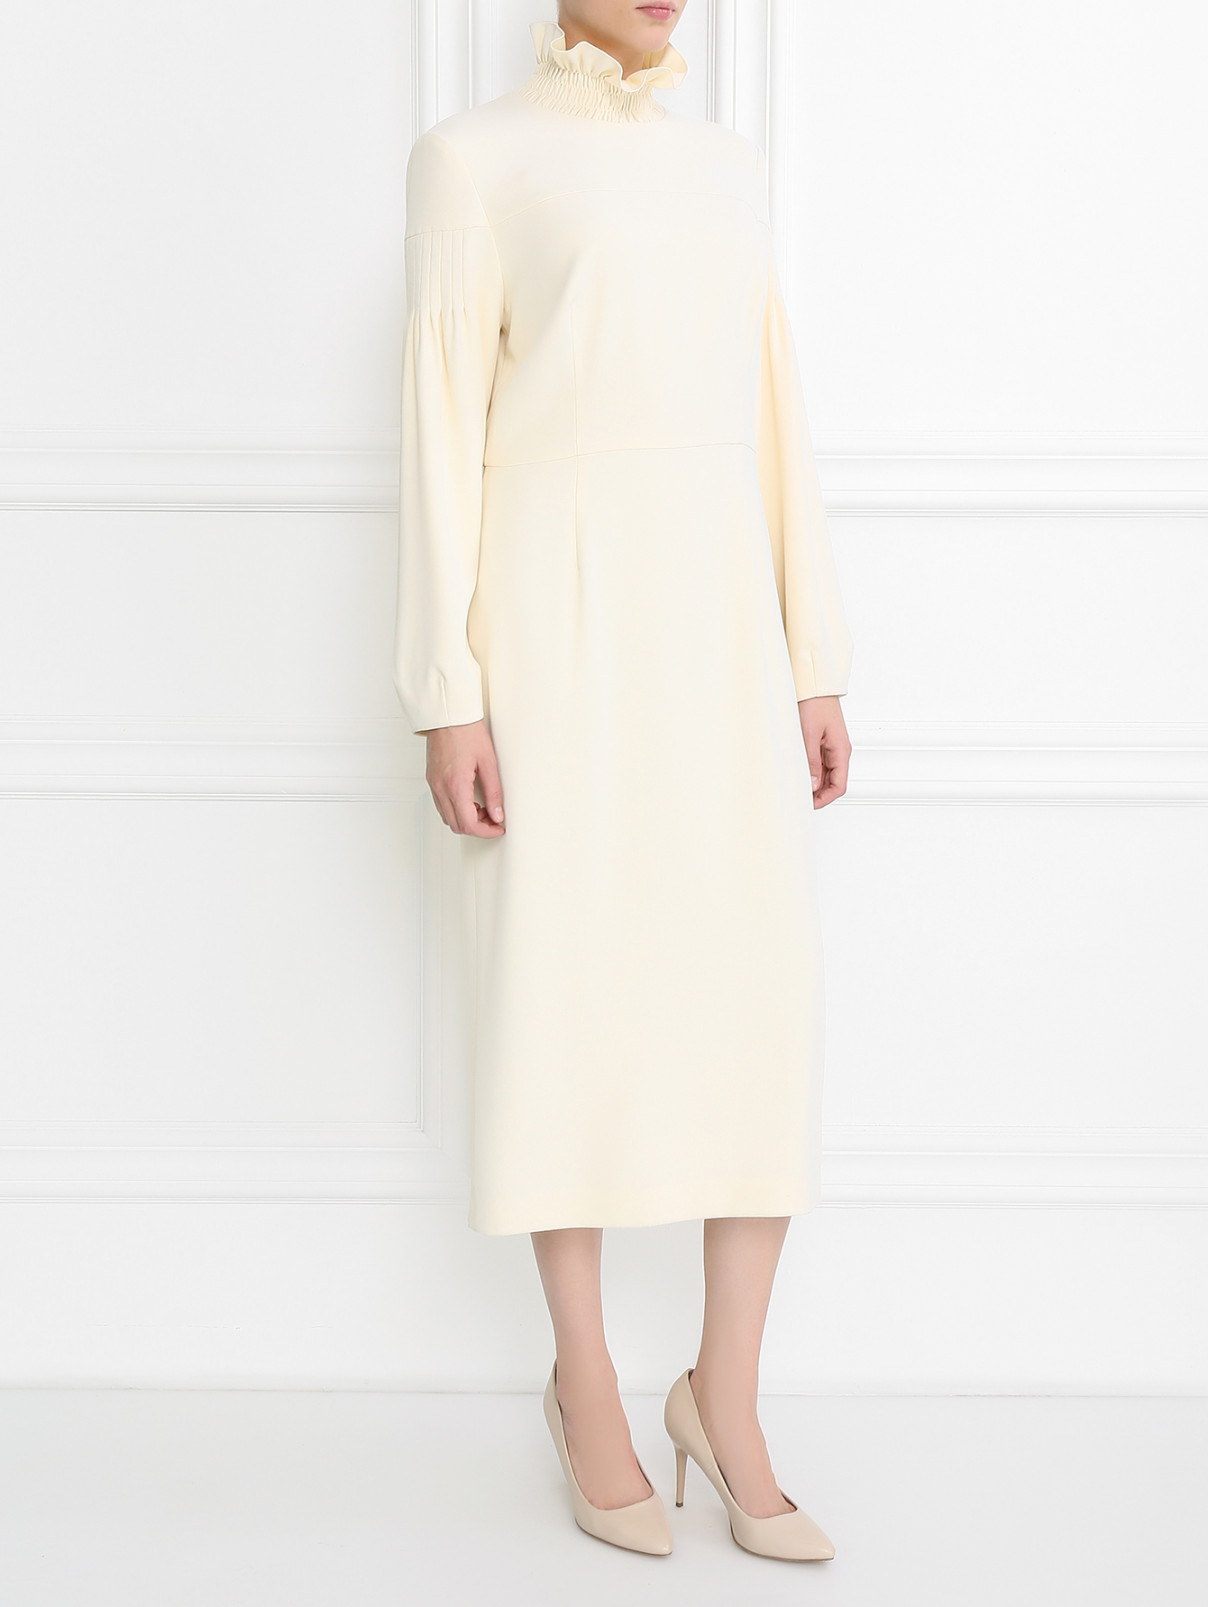 Платье-макси с контрастной отделкой A La Russe  –  Модель Общий вид  – Цвет:  Белый